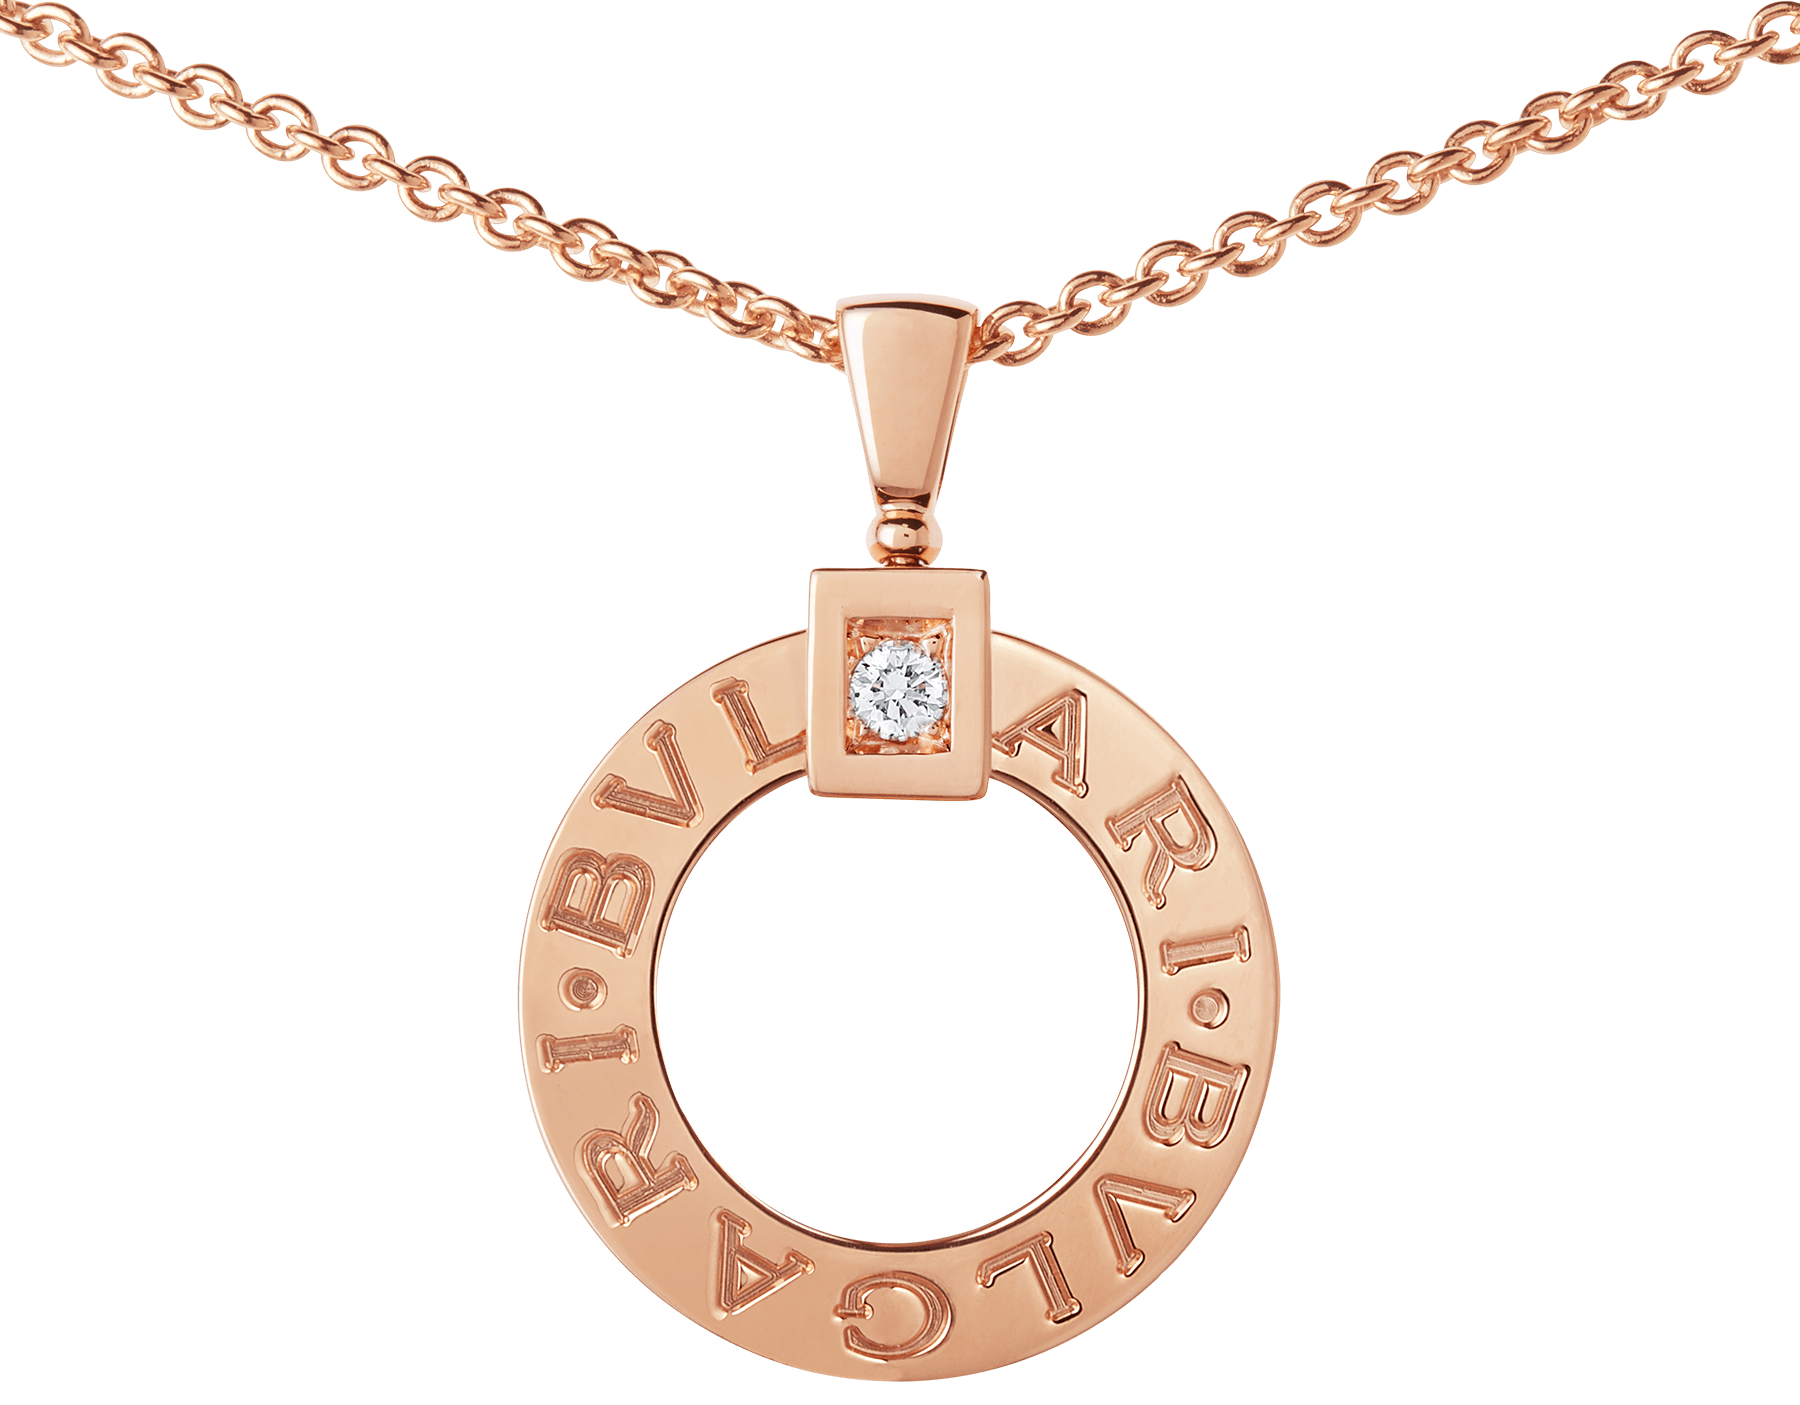 bvlgari rose gold chain